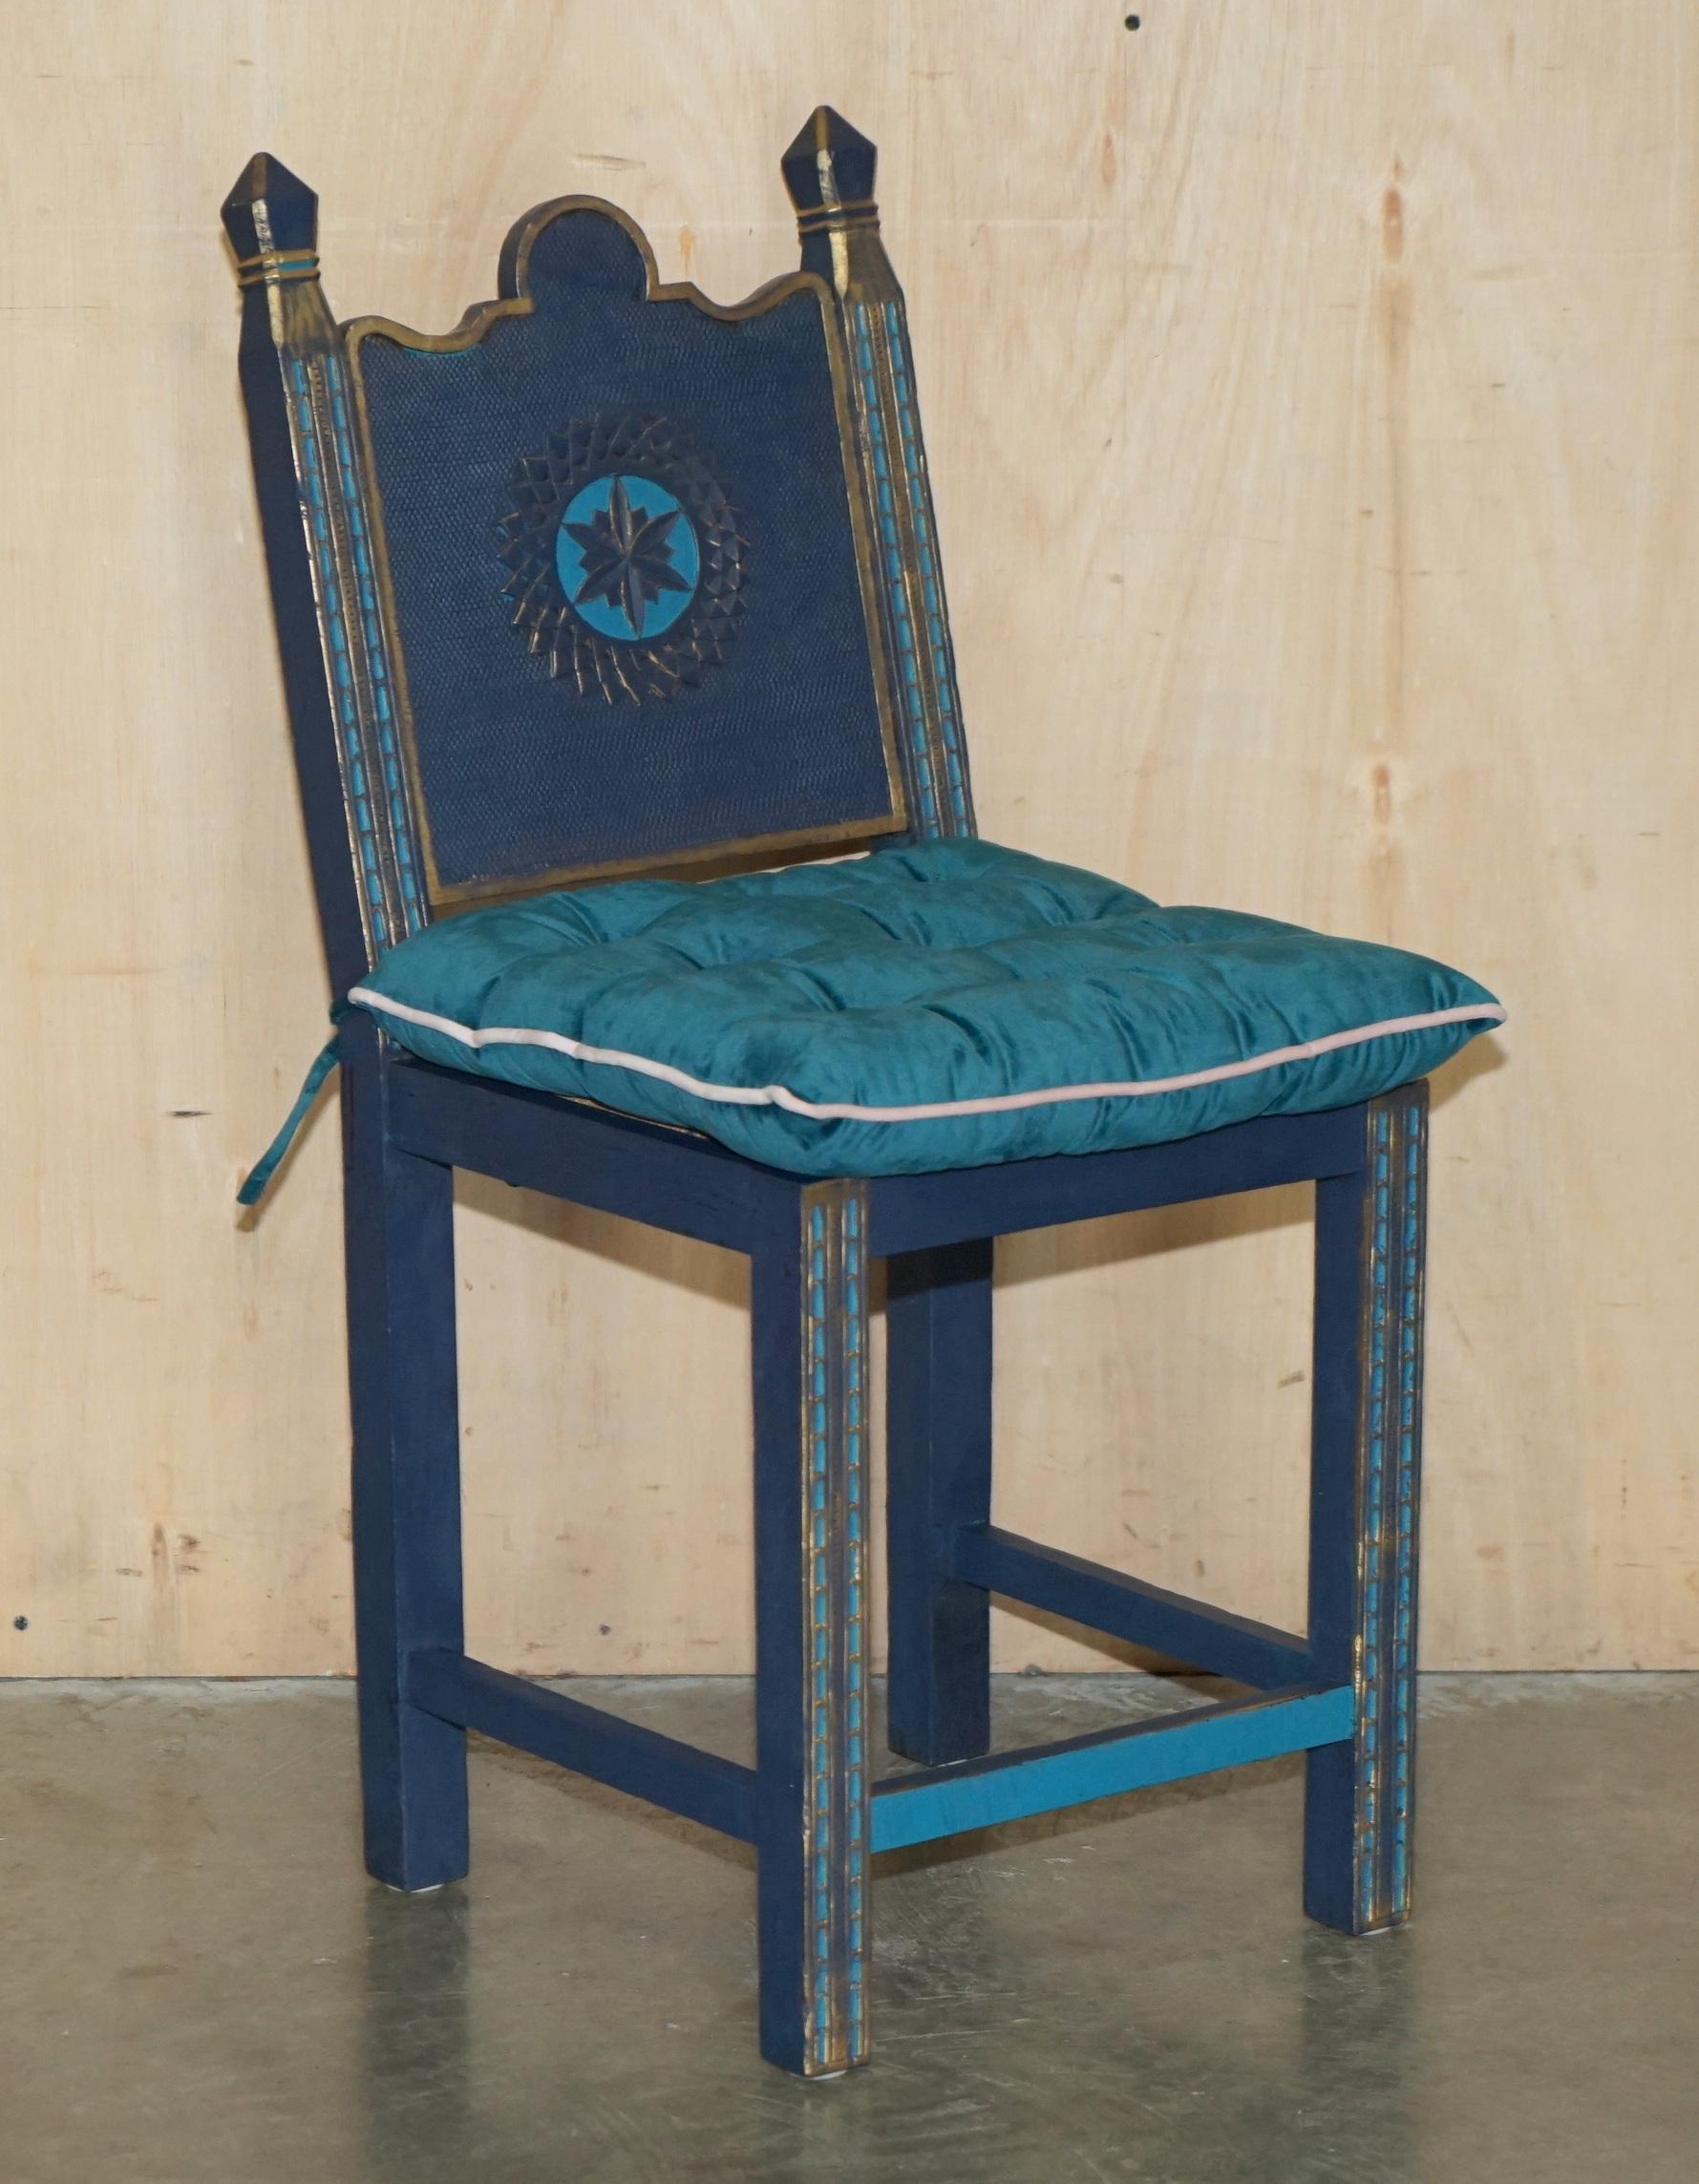 Royal House Antiques

Royal House Antiques freut sich, diese hübsche Garnitur von drei handbemalten gotischen Bergère-Stühlen mit überdurchschnittlich hohen Sitzen und Samtpolstern zum Verkauf anbieten zu können.

Bitte beachten Sie die Liefergebühr